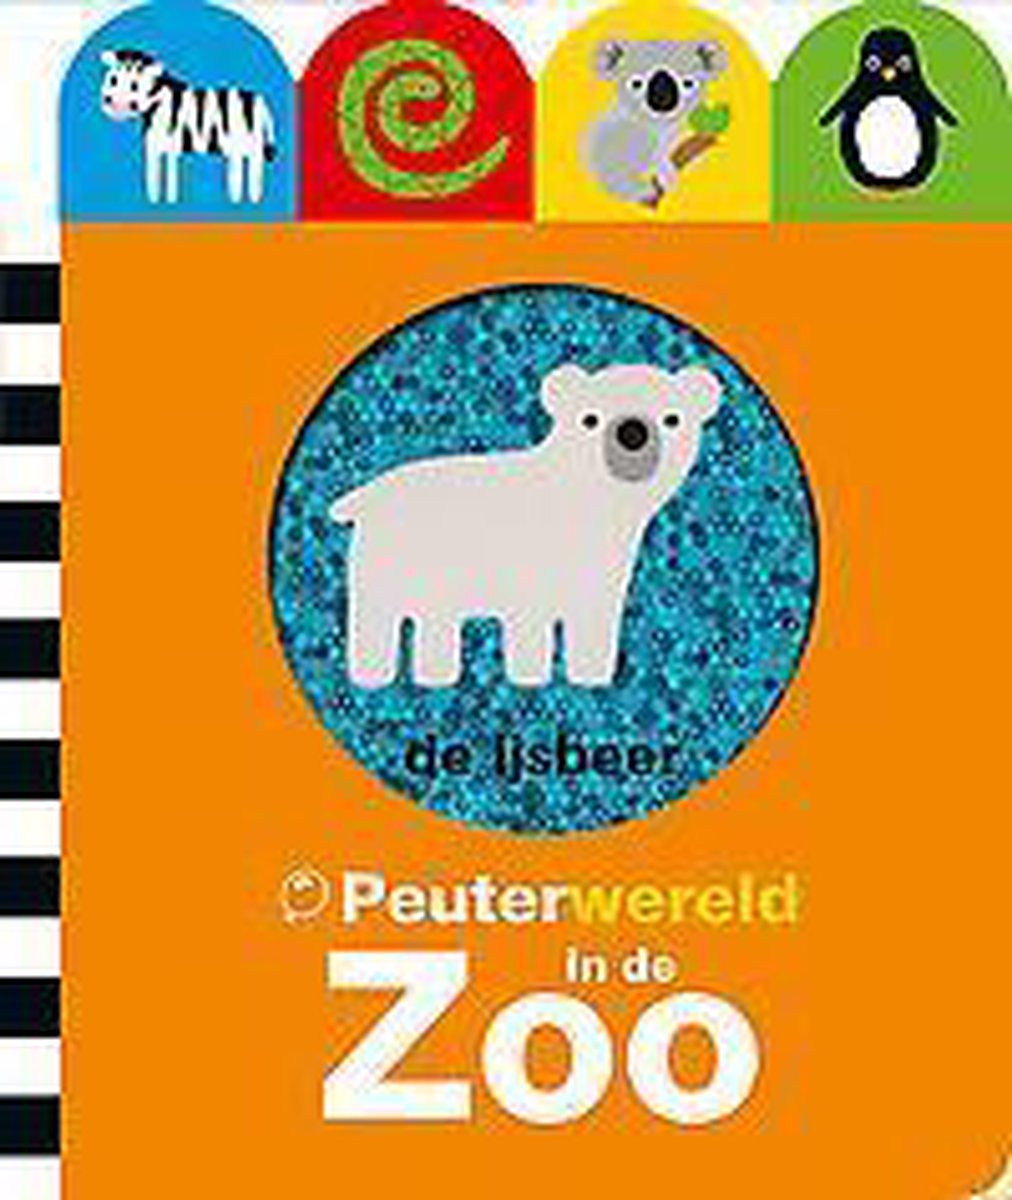 In de zoo / Peuterwereld